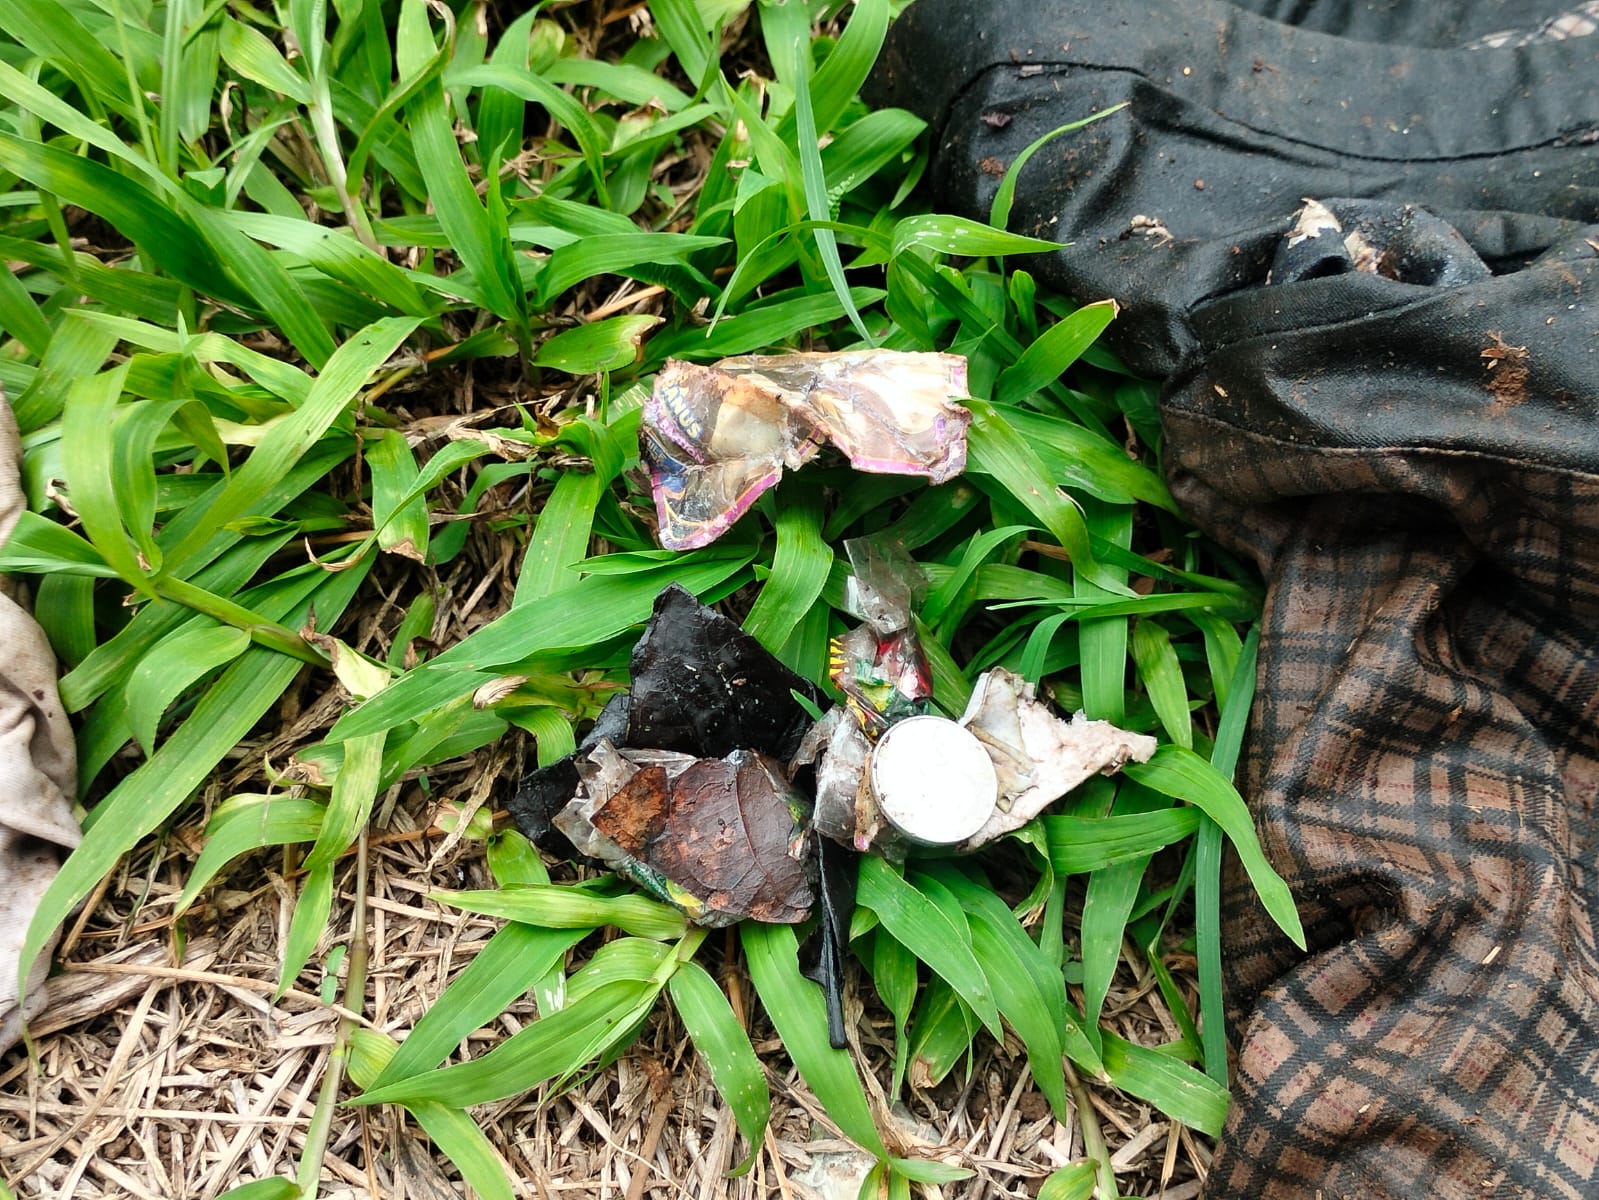 Diduga Mayat Anak Bawah Umur, Polisi Evakuasi Penemuan Tulang Belulang Manusia di Kabawetan ke RSUD Kepahiang